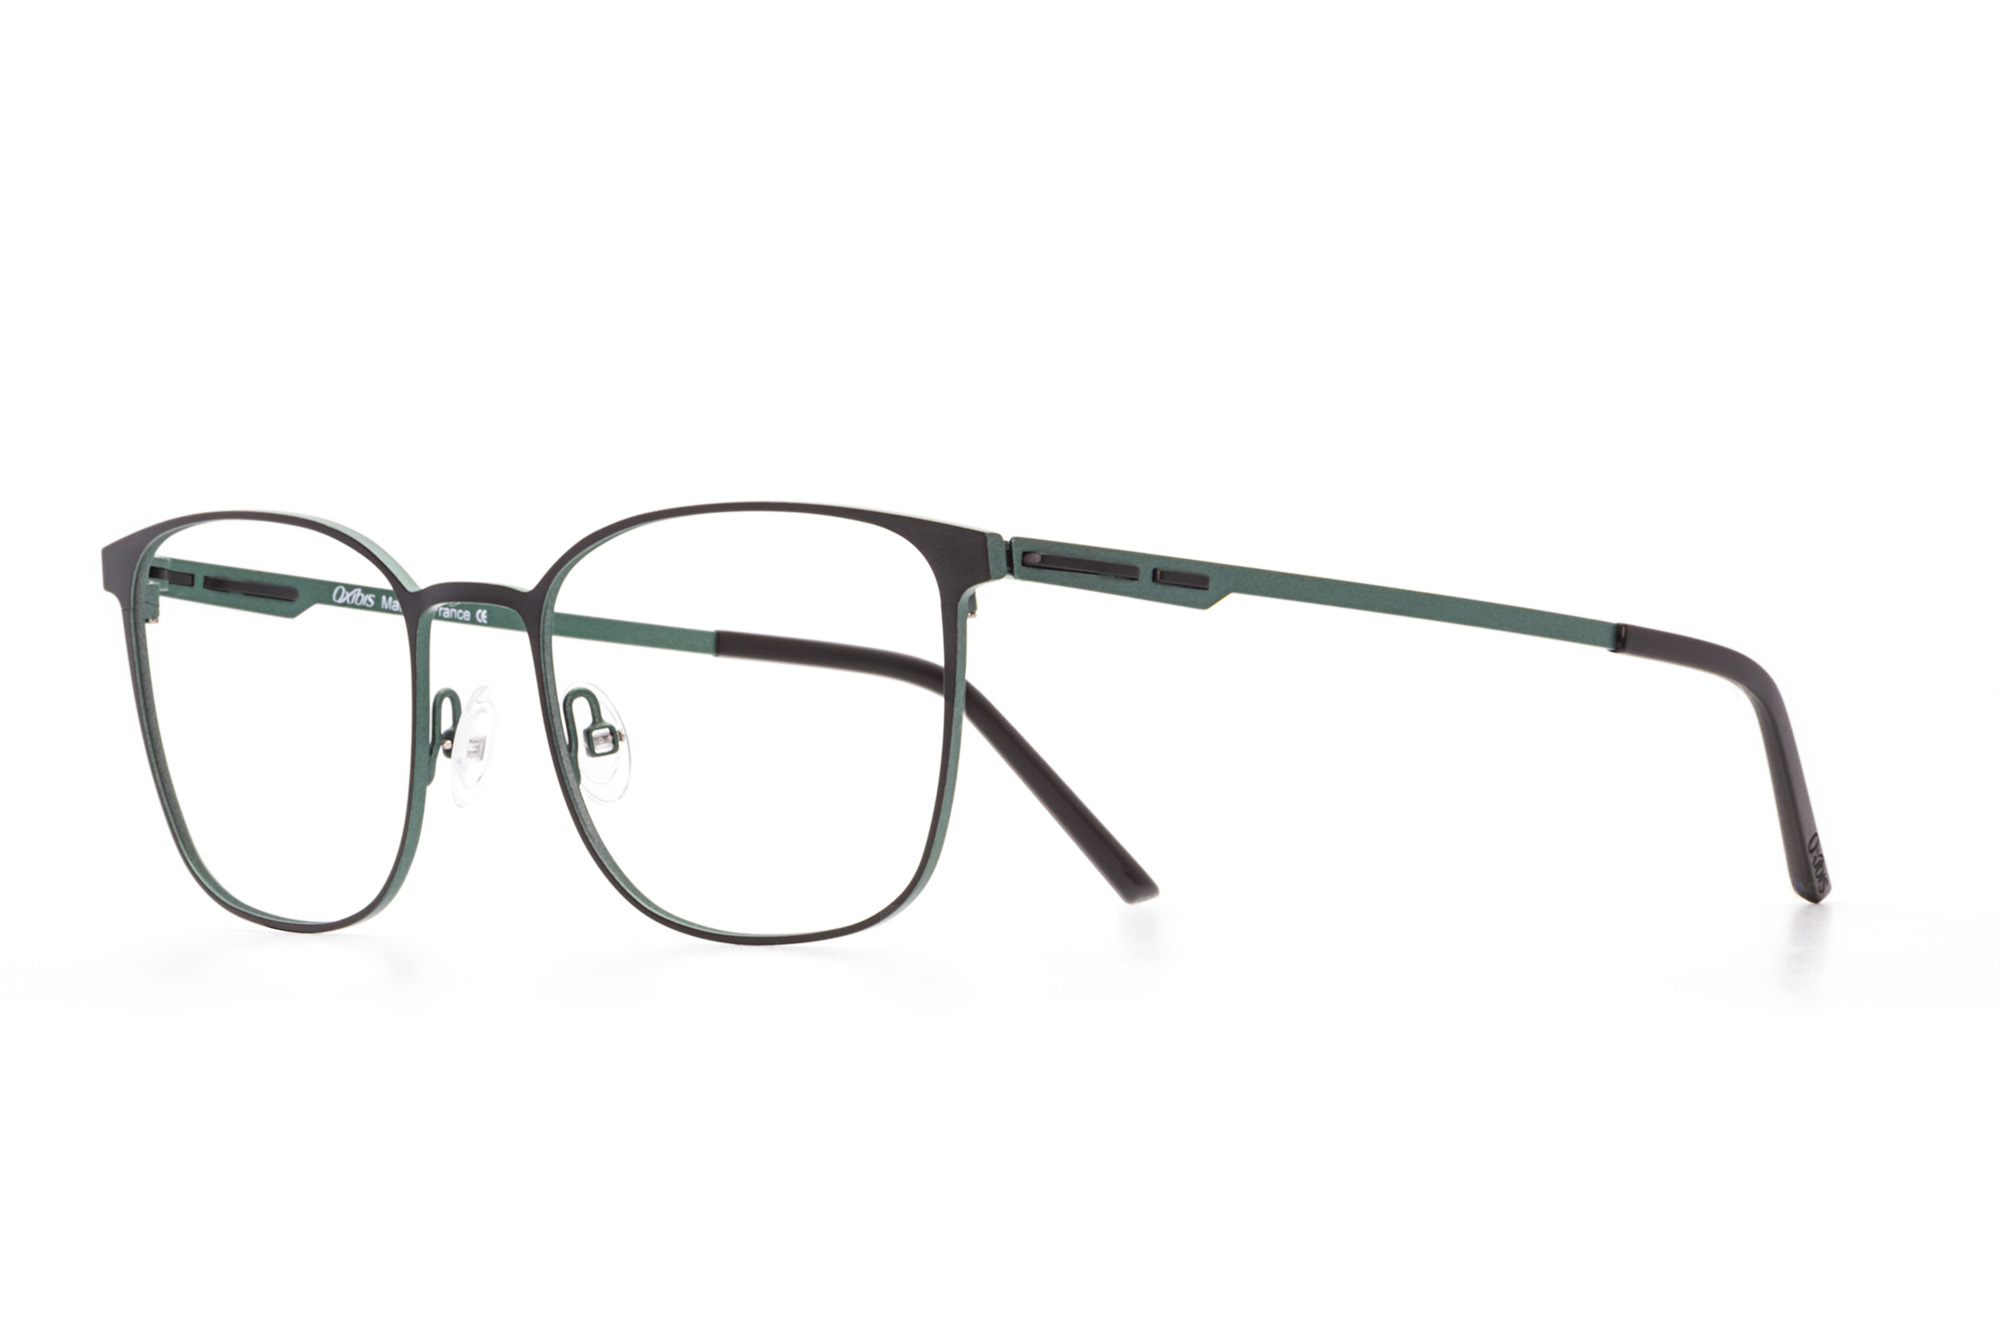 Kullanıma hazır optik tarzda işlenmiş camları ve optik uyumlu çerçevesiyle Oxibis Baggy BA3C4 54 büyük ekartman yeşil ve haki renkli dikdörtgen model erkek gözlüğünü optisyen veya gözlükçülerin sunacağı numarasız veya numaralı cam özelleştirmeleriyle size en yakın gözlükçüden satın alabilirsiniz.